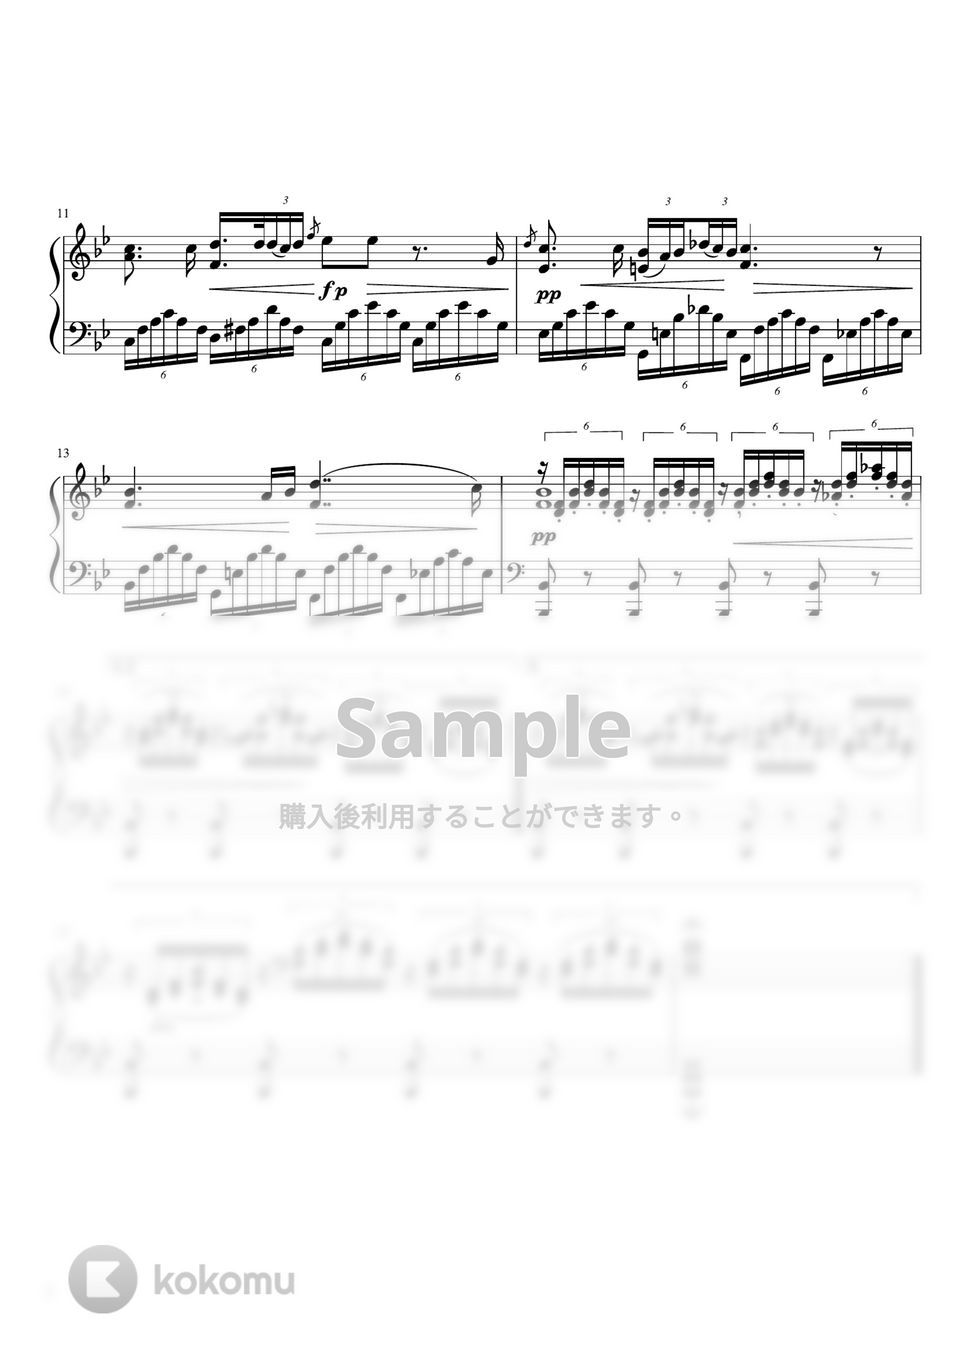 シューベルト - アヴェマリア (B♭・ピアノソロ中級) by pfkaori